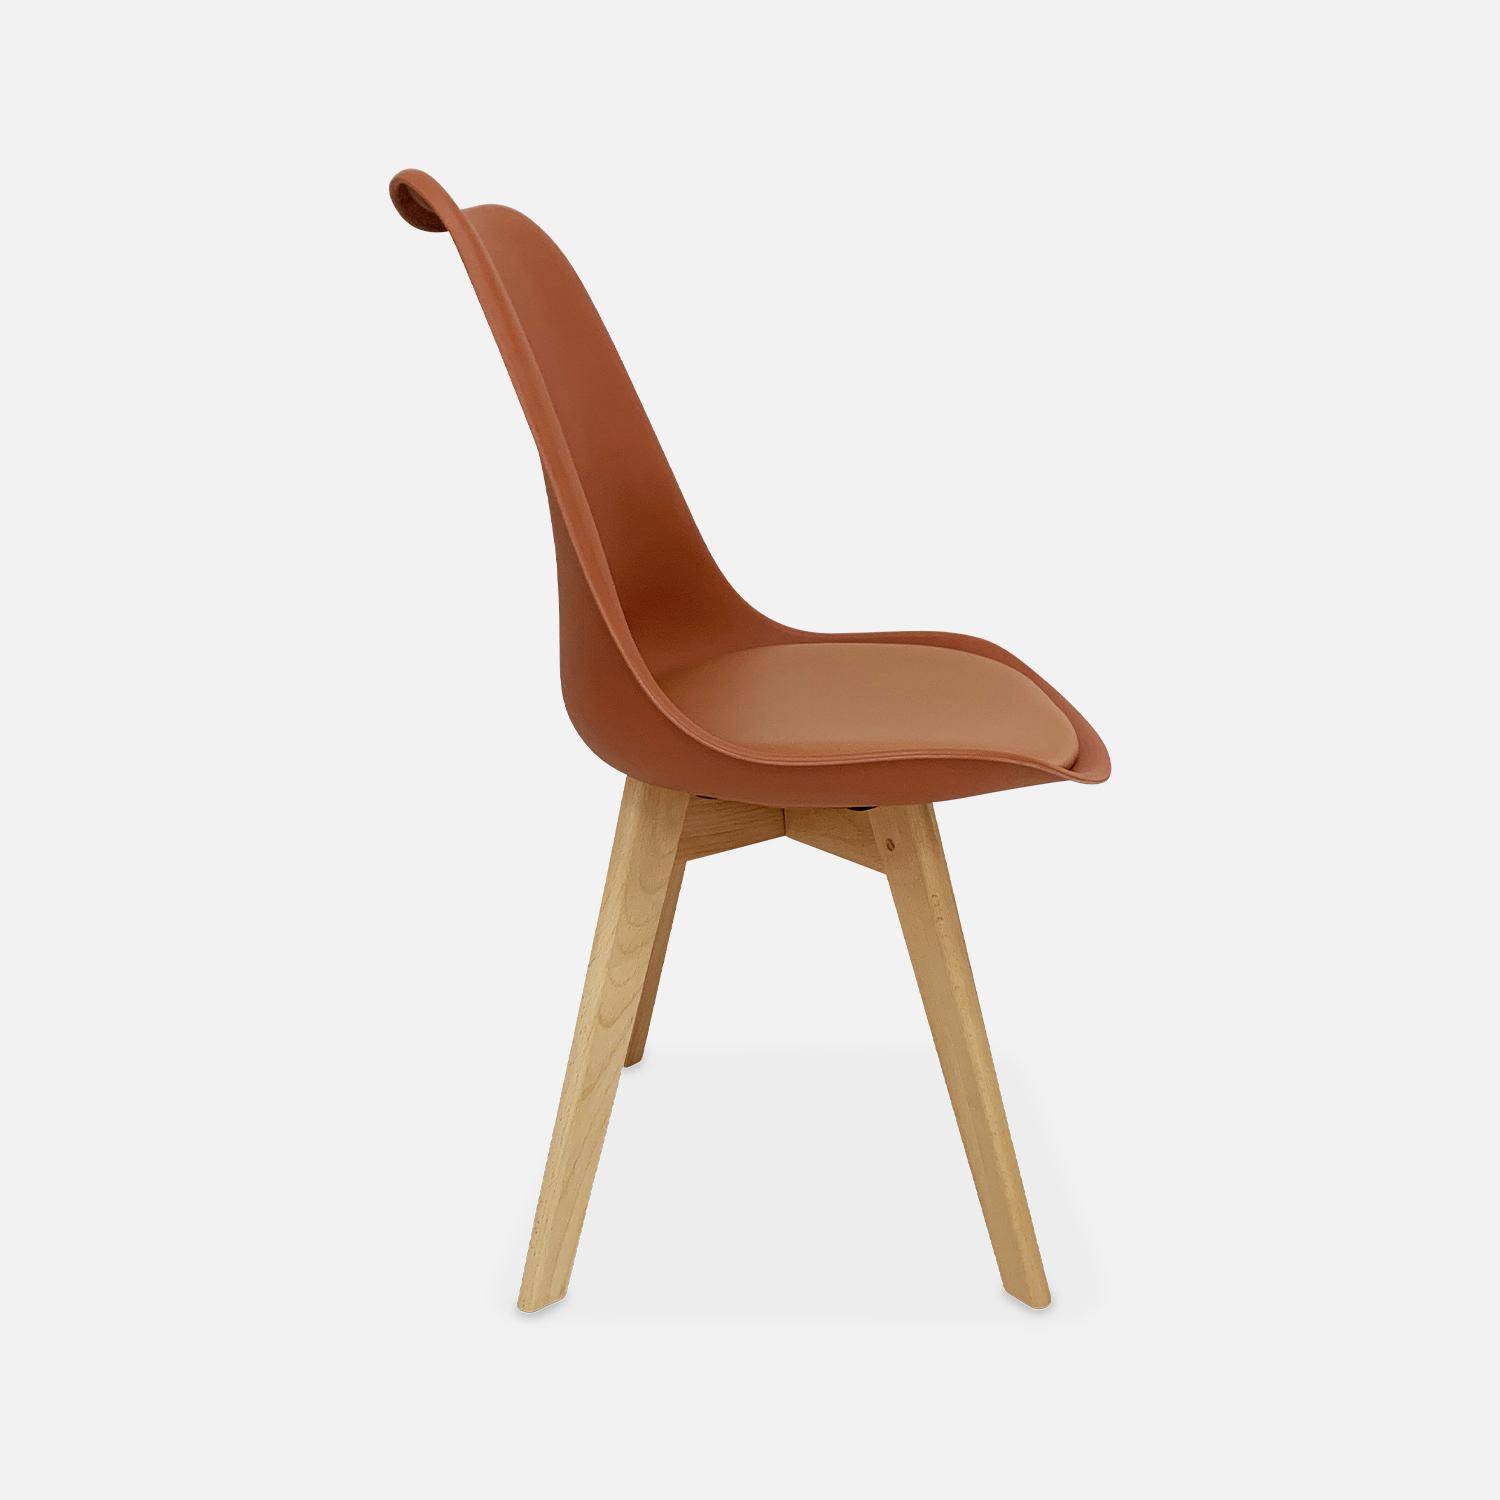 Conjunto de 4 sillas escandinavas, patas de madera de haya, asientos individuales, terracota,sweeek,Photo6